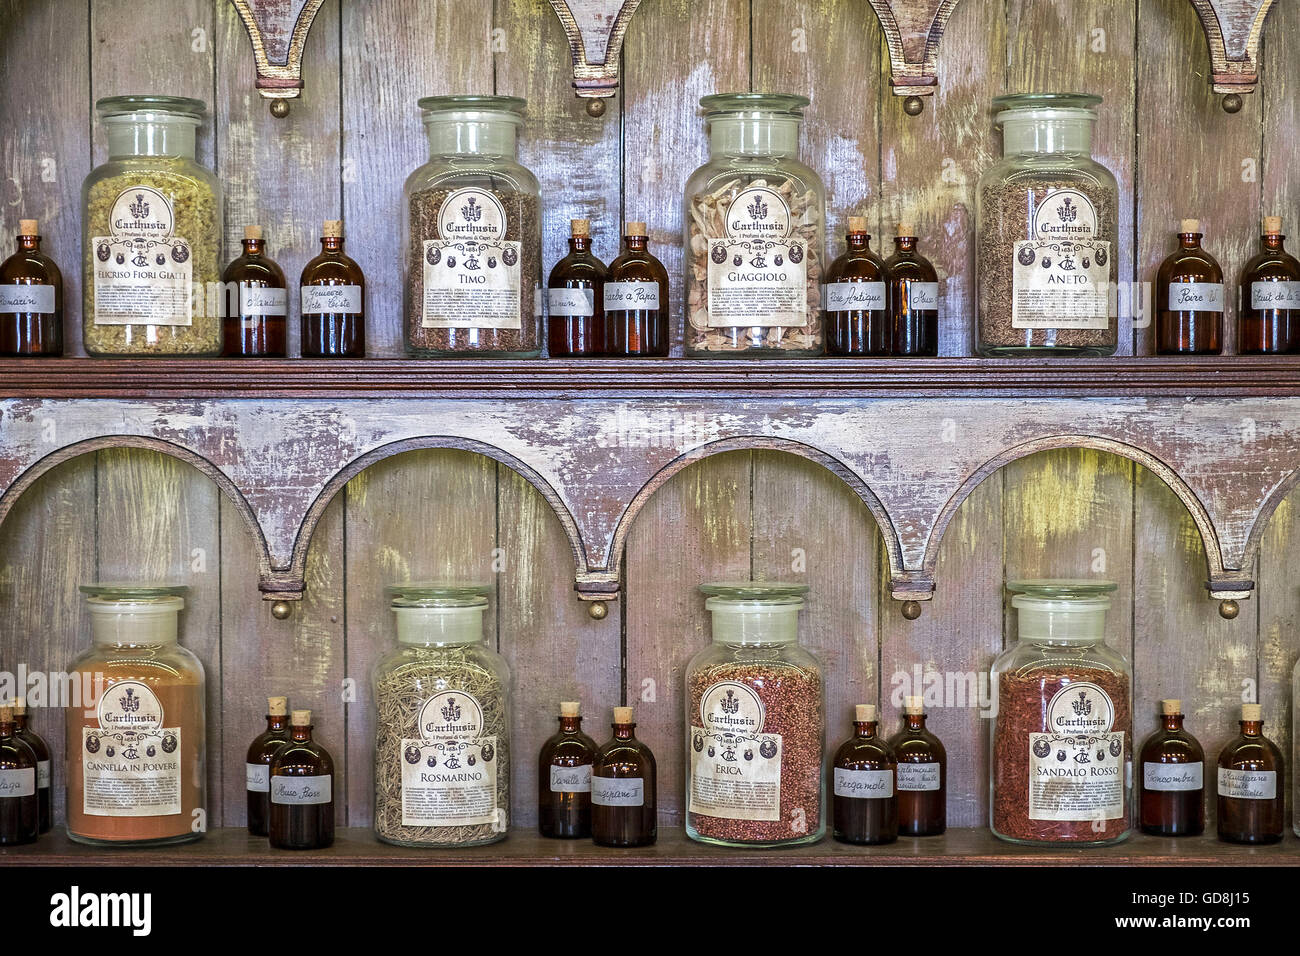 Meubles anciens biberons et petits pots de parfum d'ingrédients à la parfumerie Carthusia sur l'île de Capri, Italie Banque D'Images